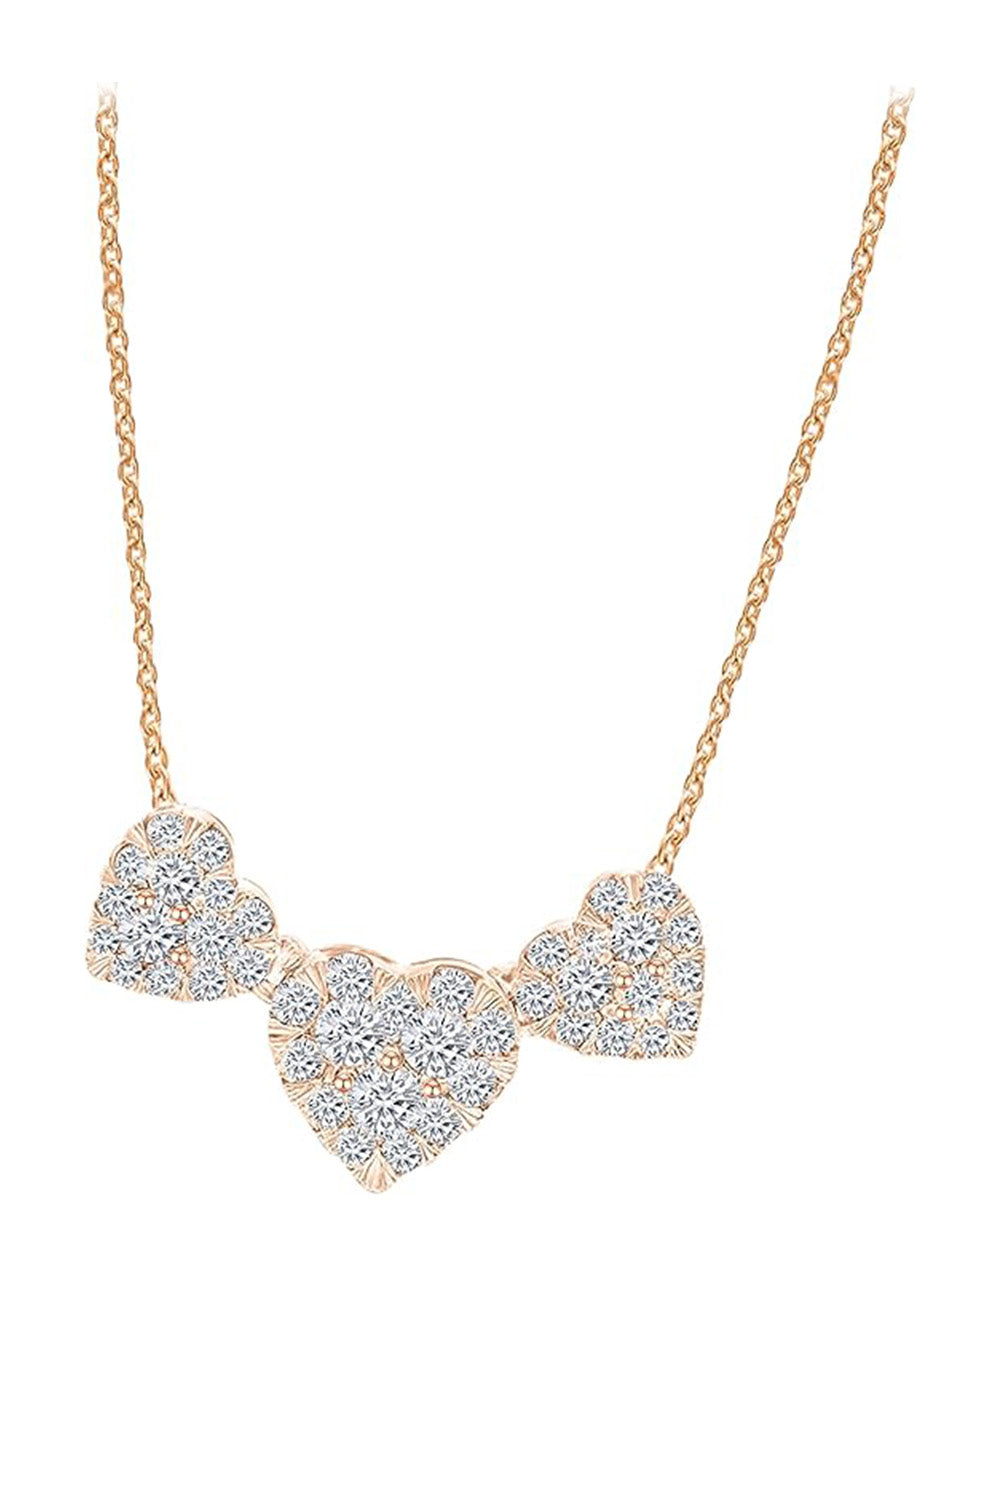 Rose Gold Color Triple Heart Necklace, Women's Pendant Necklace